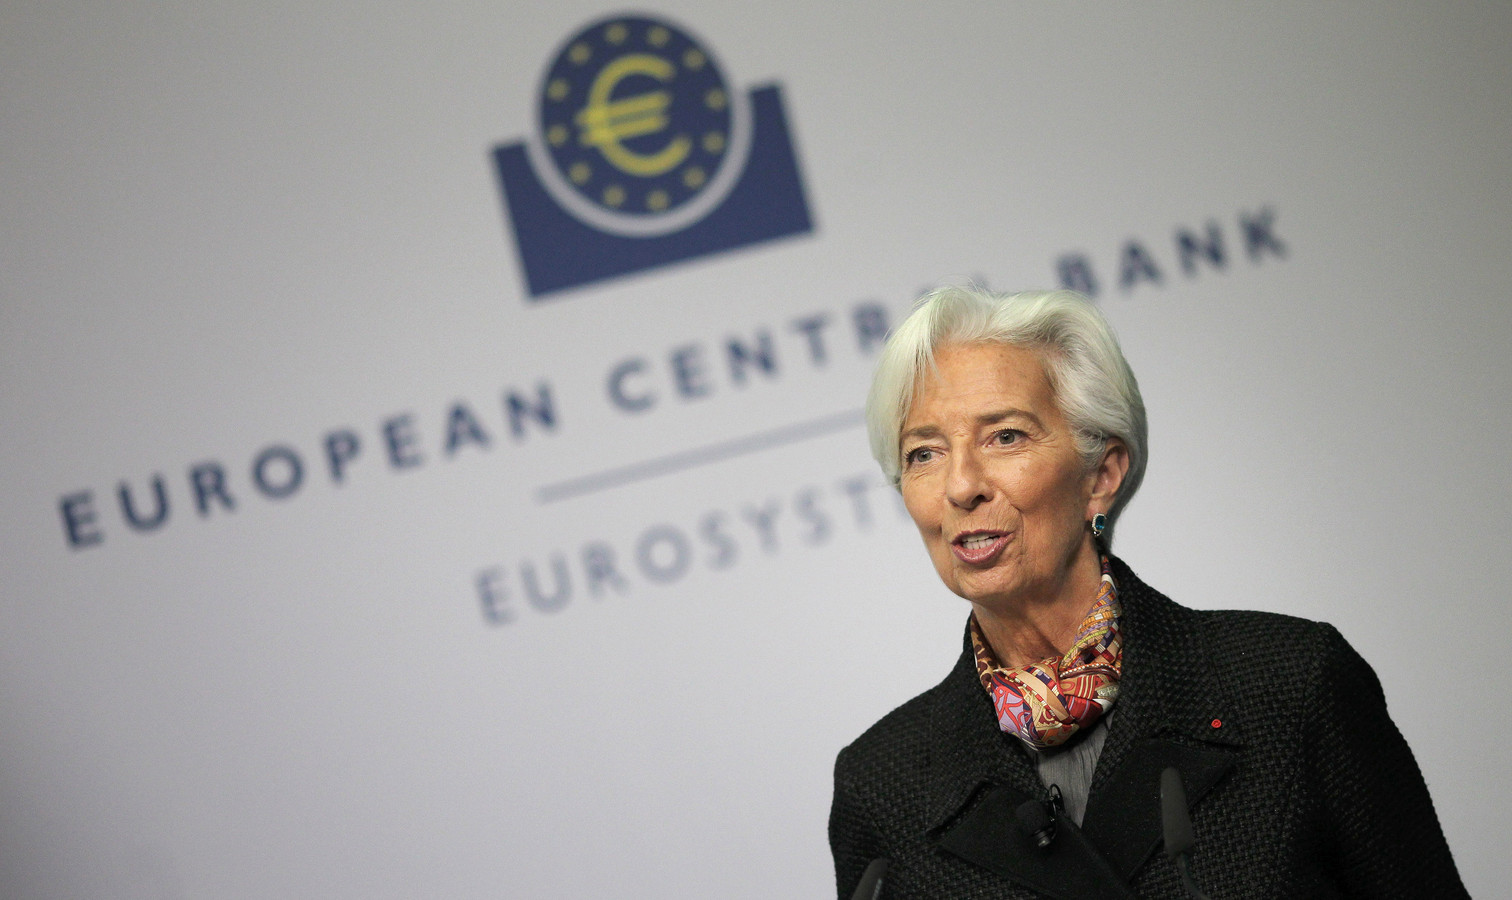 Voorzitter Christine Lagarde van de Europese Centrale Bank in Frankfurt zei eind april dat de economie van de eurozone dit jaar naar verwachting zou krimpen met vijf tot twaalf procent.